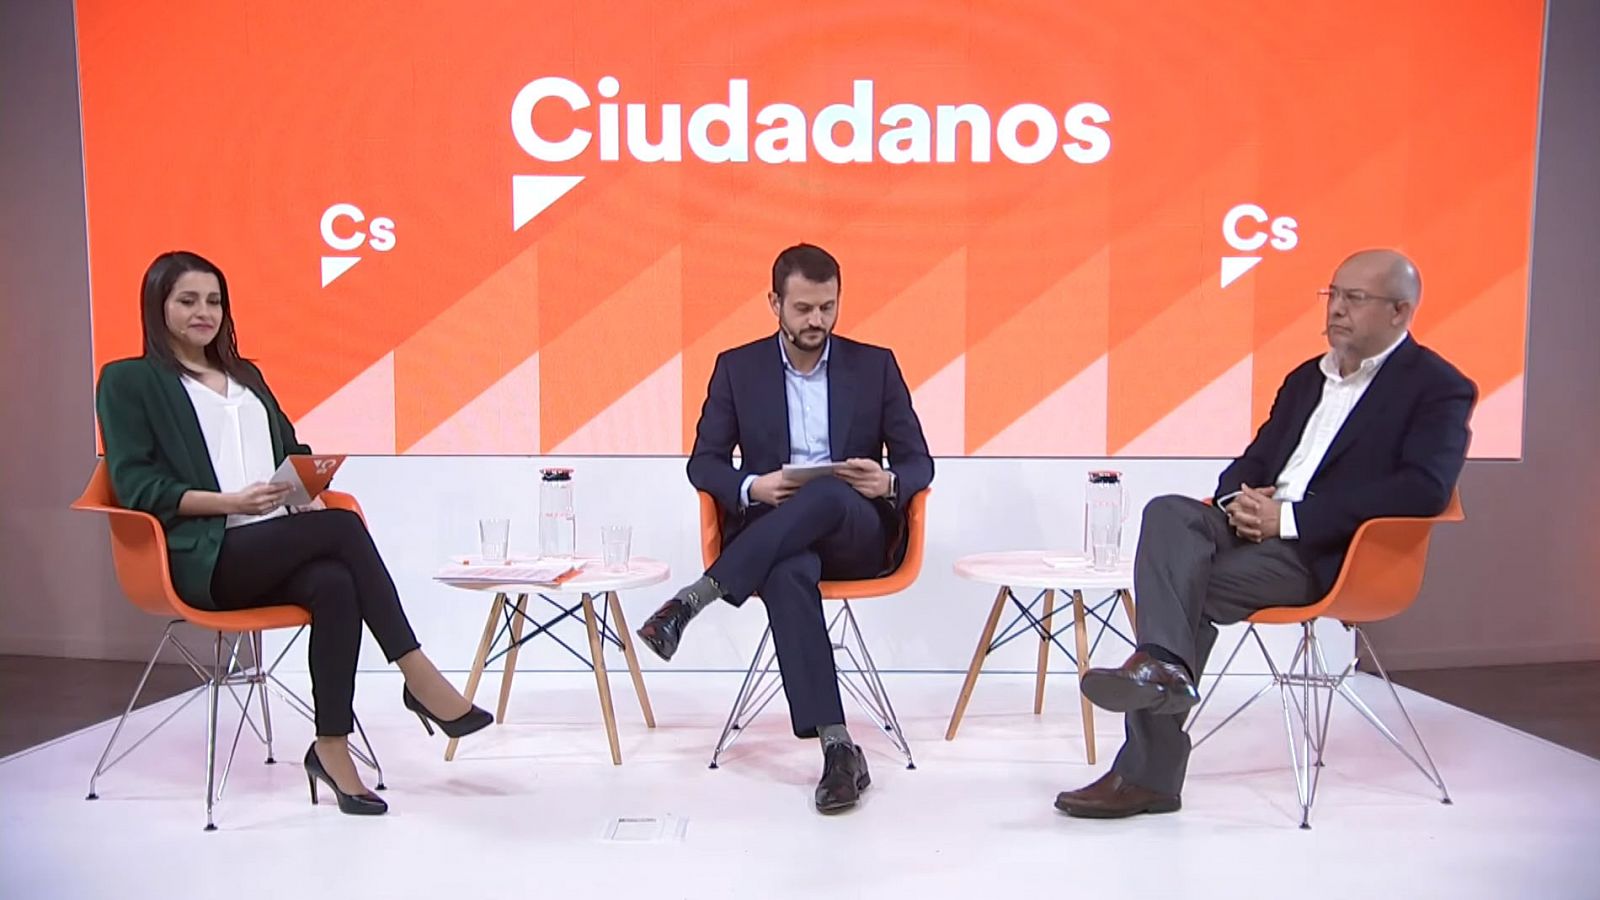 Igea y Arrimadas protagonizan un debate tranquilo pero con pullas en la sede de Ciudadanos - RTVE.es